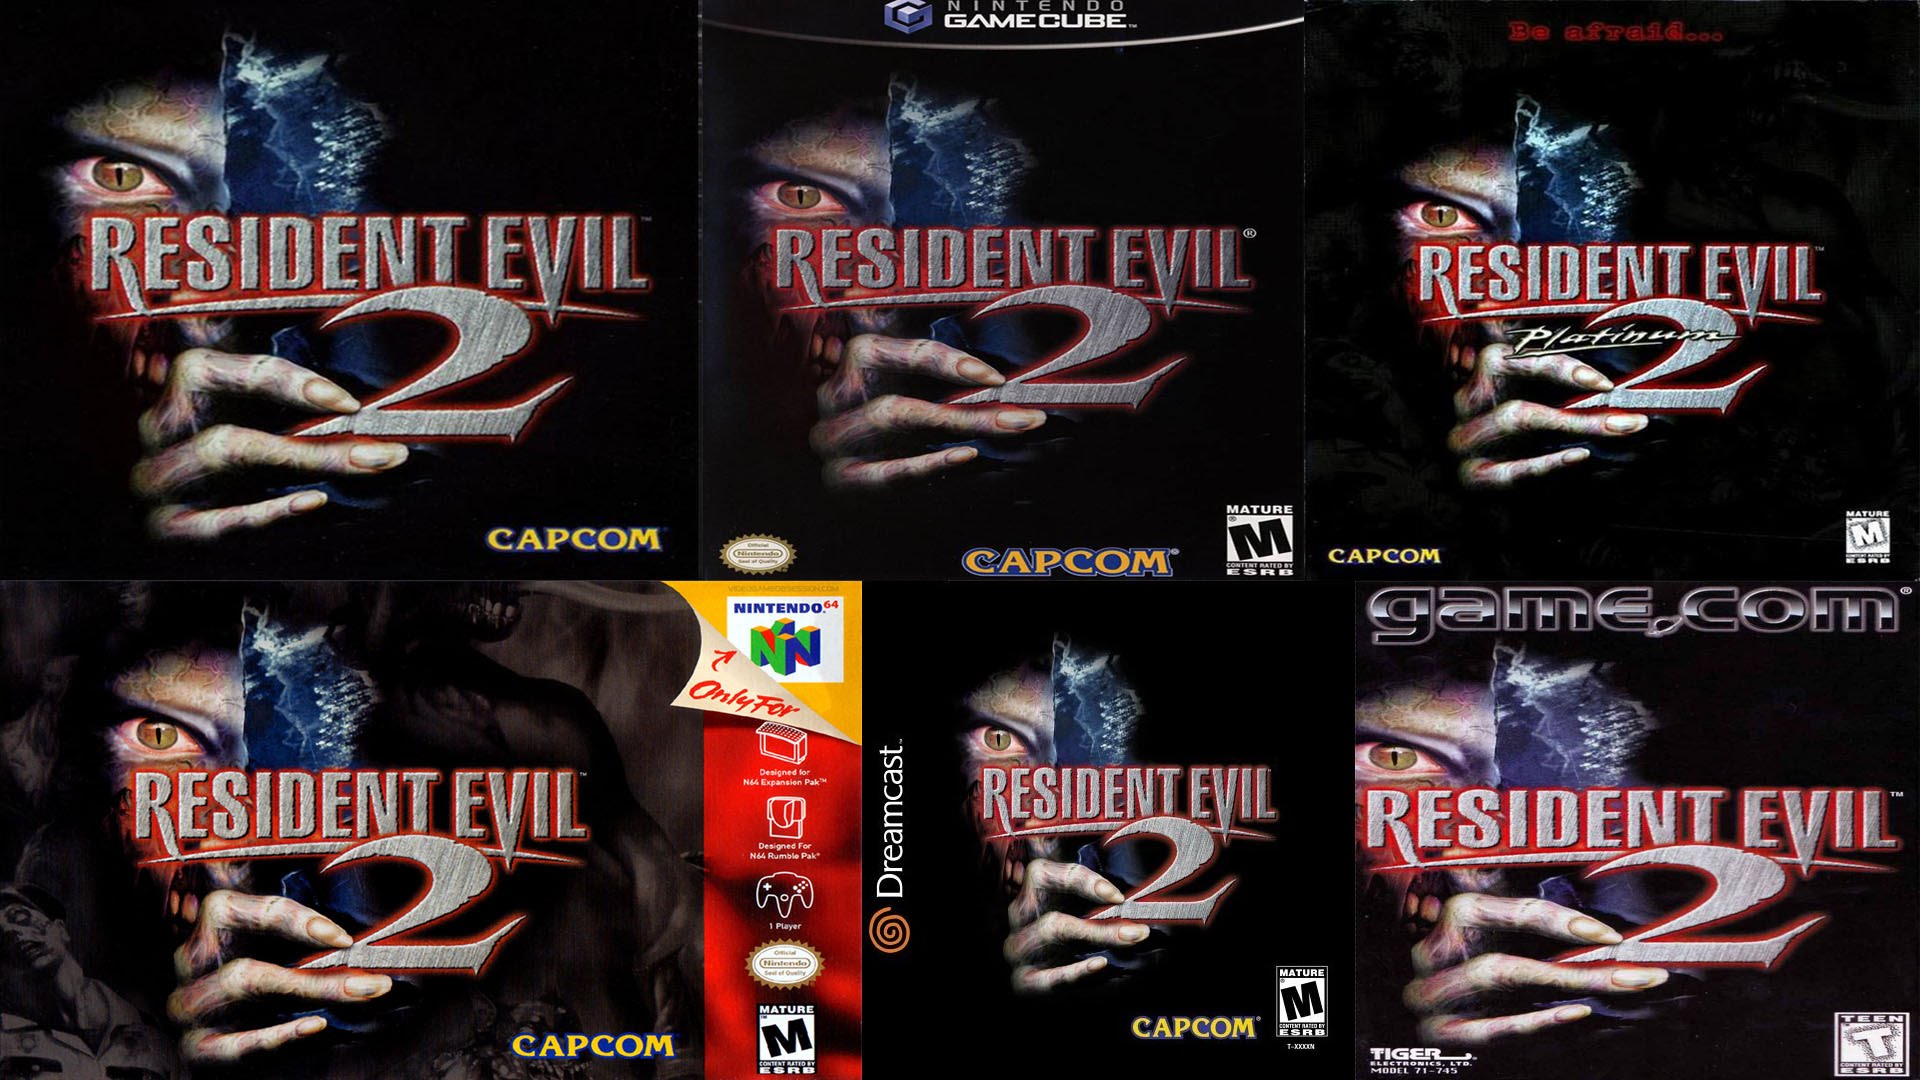 Prepare a máquina! Capcom altera requisitos de Resident Evil 2